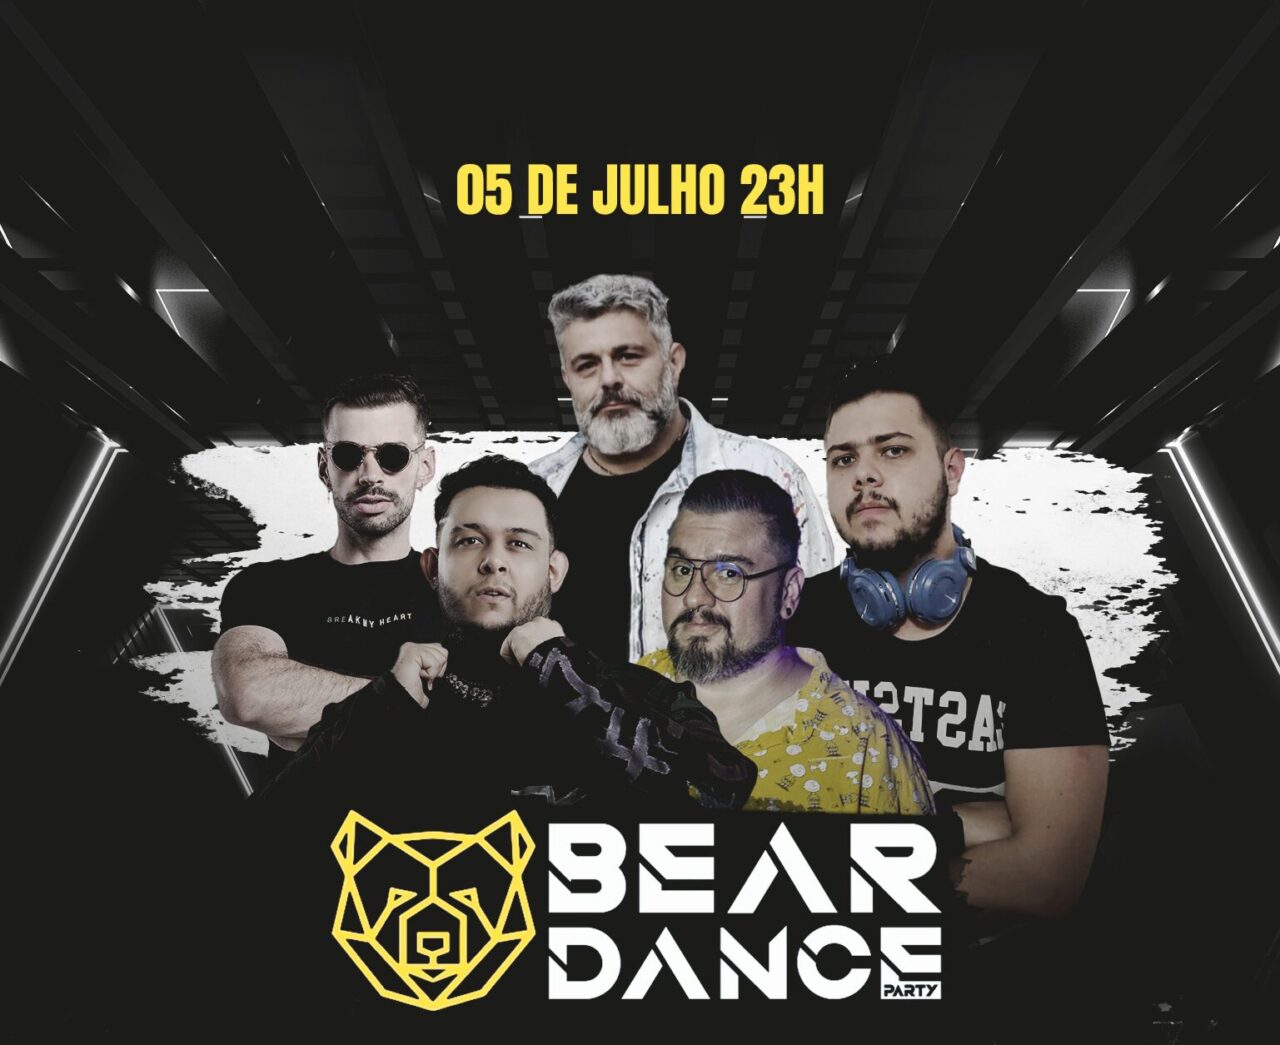 bear dance party musica